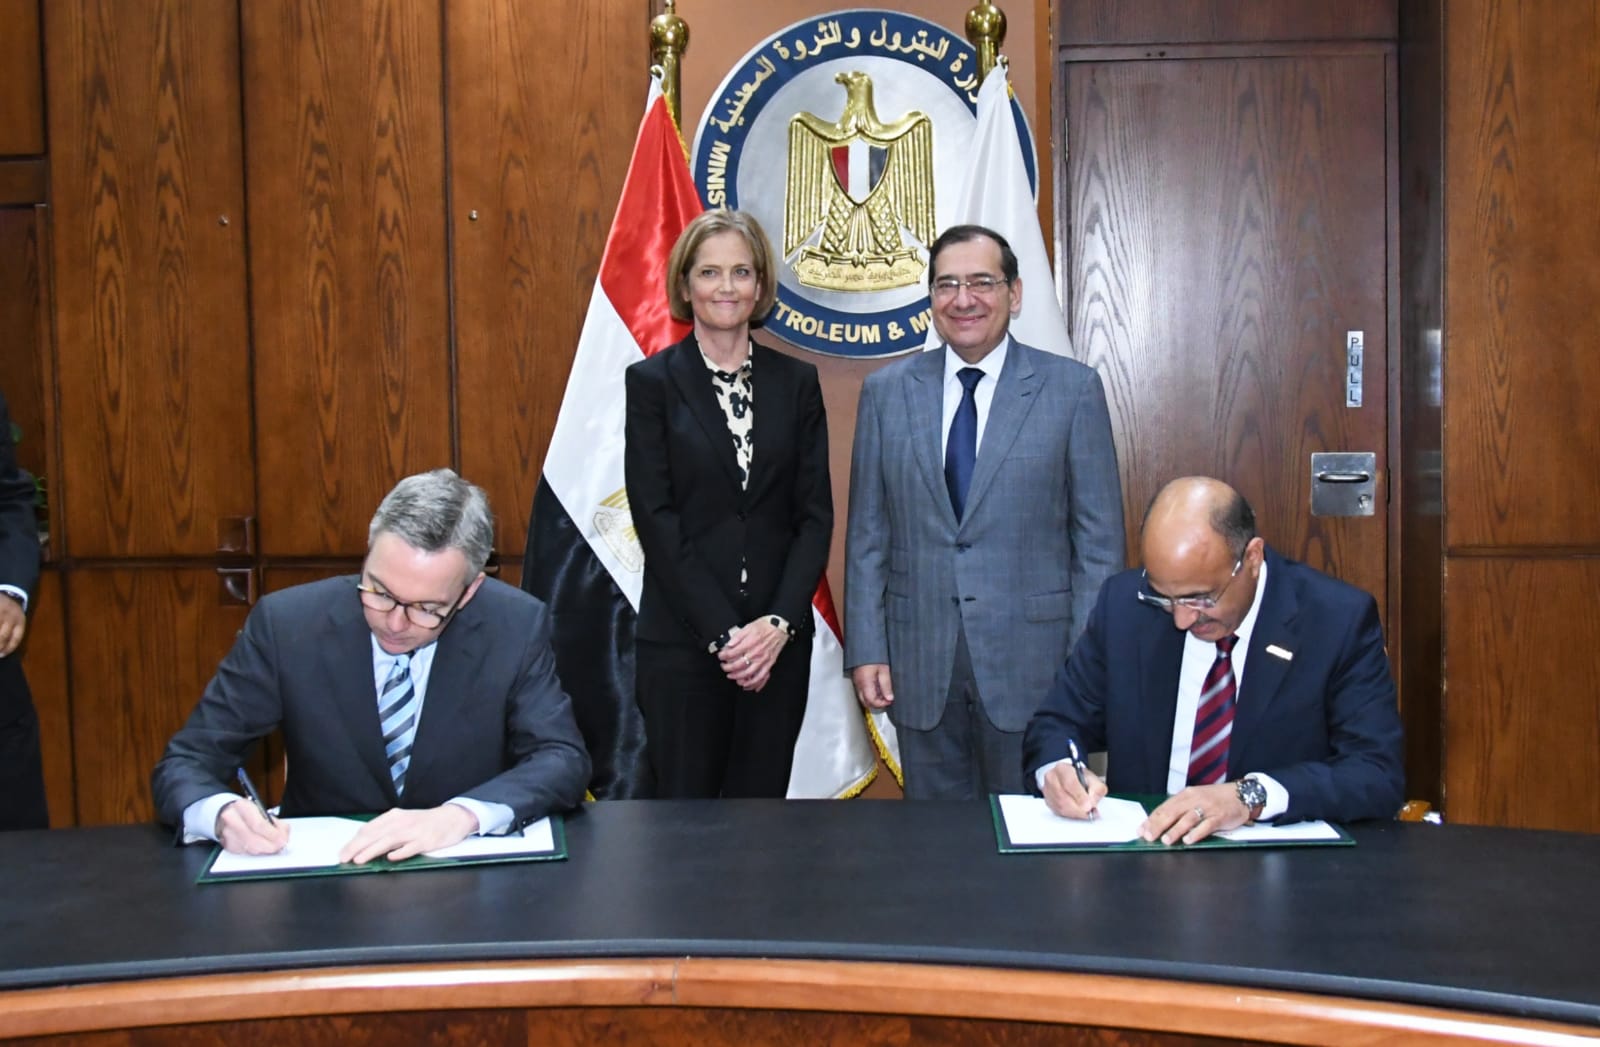 توقيع اتفاقية جديدة بين الإسكندرية لتكرير التروكيماويات وشركة سكاتك النرويجيه فى مجال الطاقة الخضراء